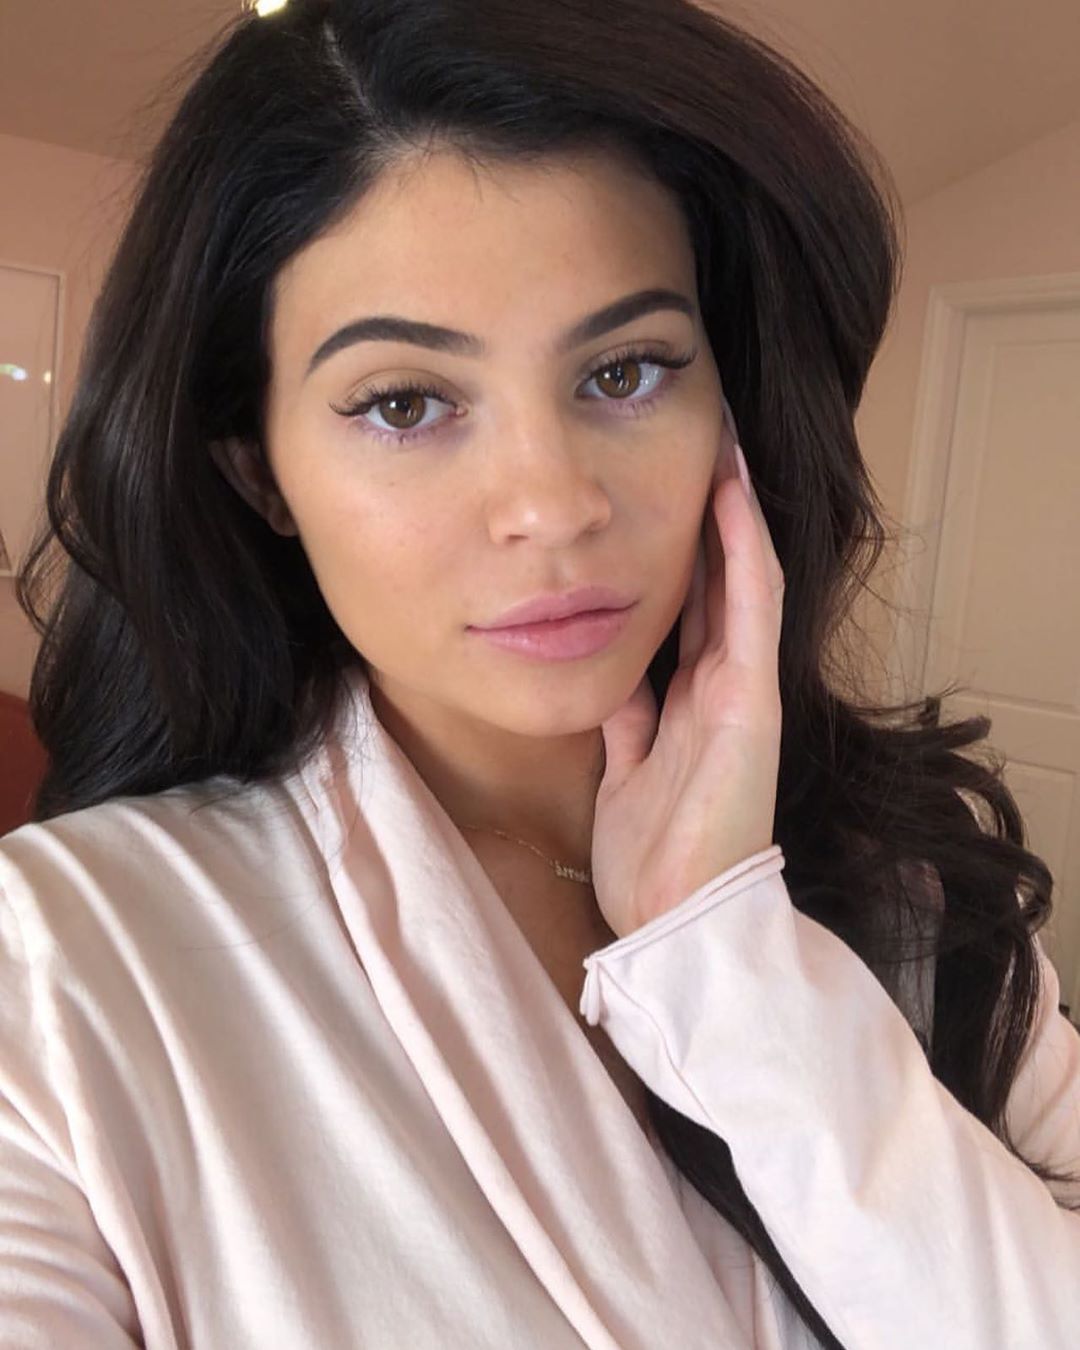 Η Kylie Jenner μόλις κυκλοφόρησε δύο νέα προϊόντα skincare και παραδόξως δεν είναι ακόμη sold out!